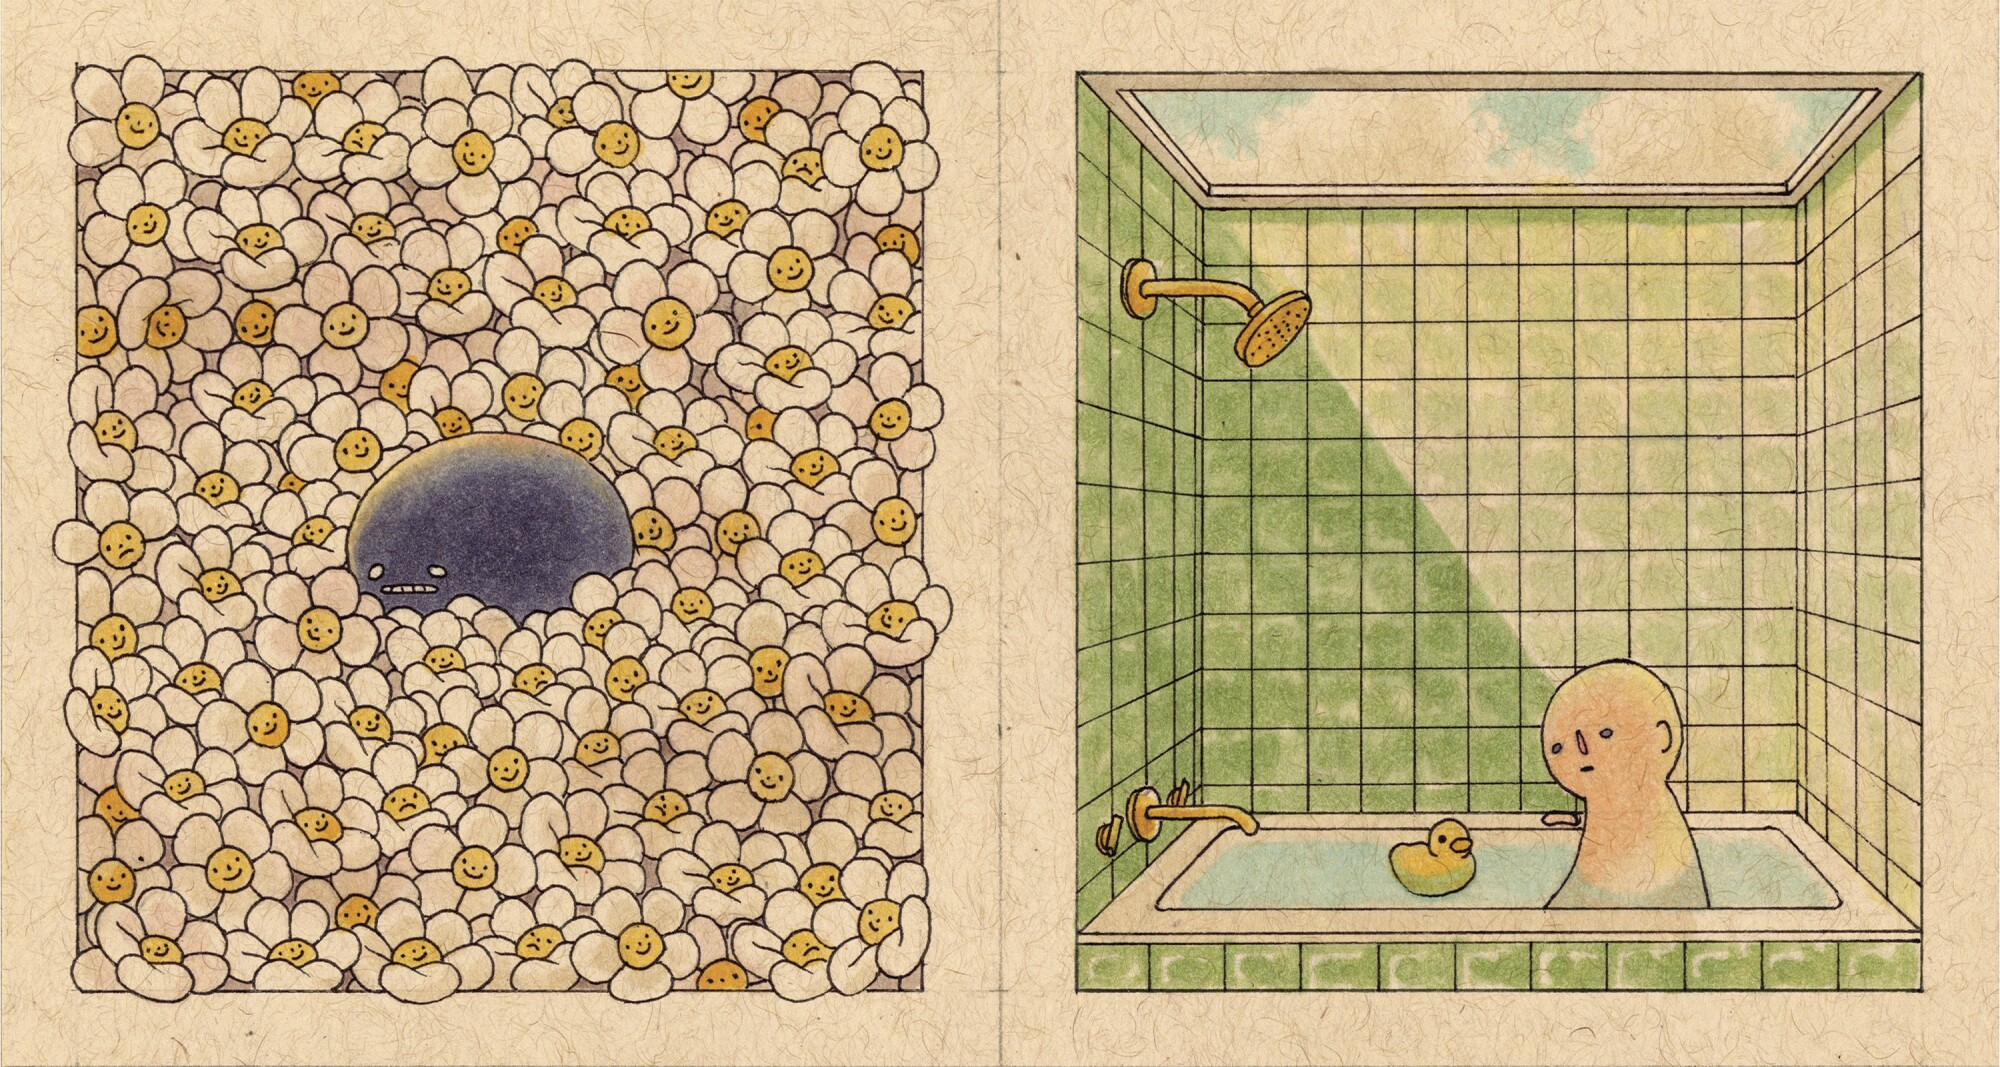 Ilustração de uma criatura azul em um campo de margaridas e um homem em uma banheira com um pato de borracha.